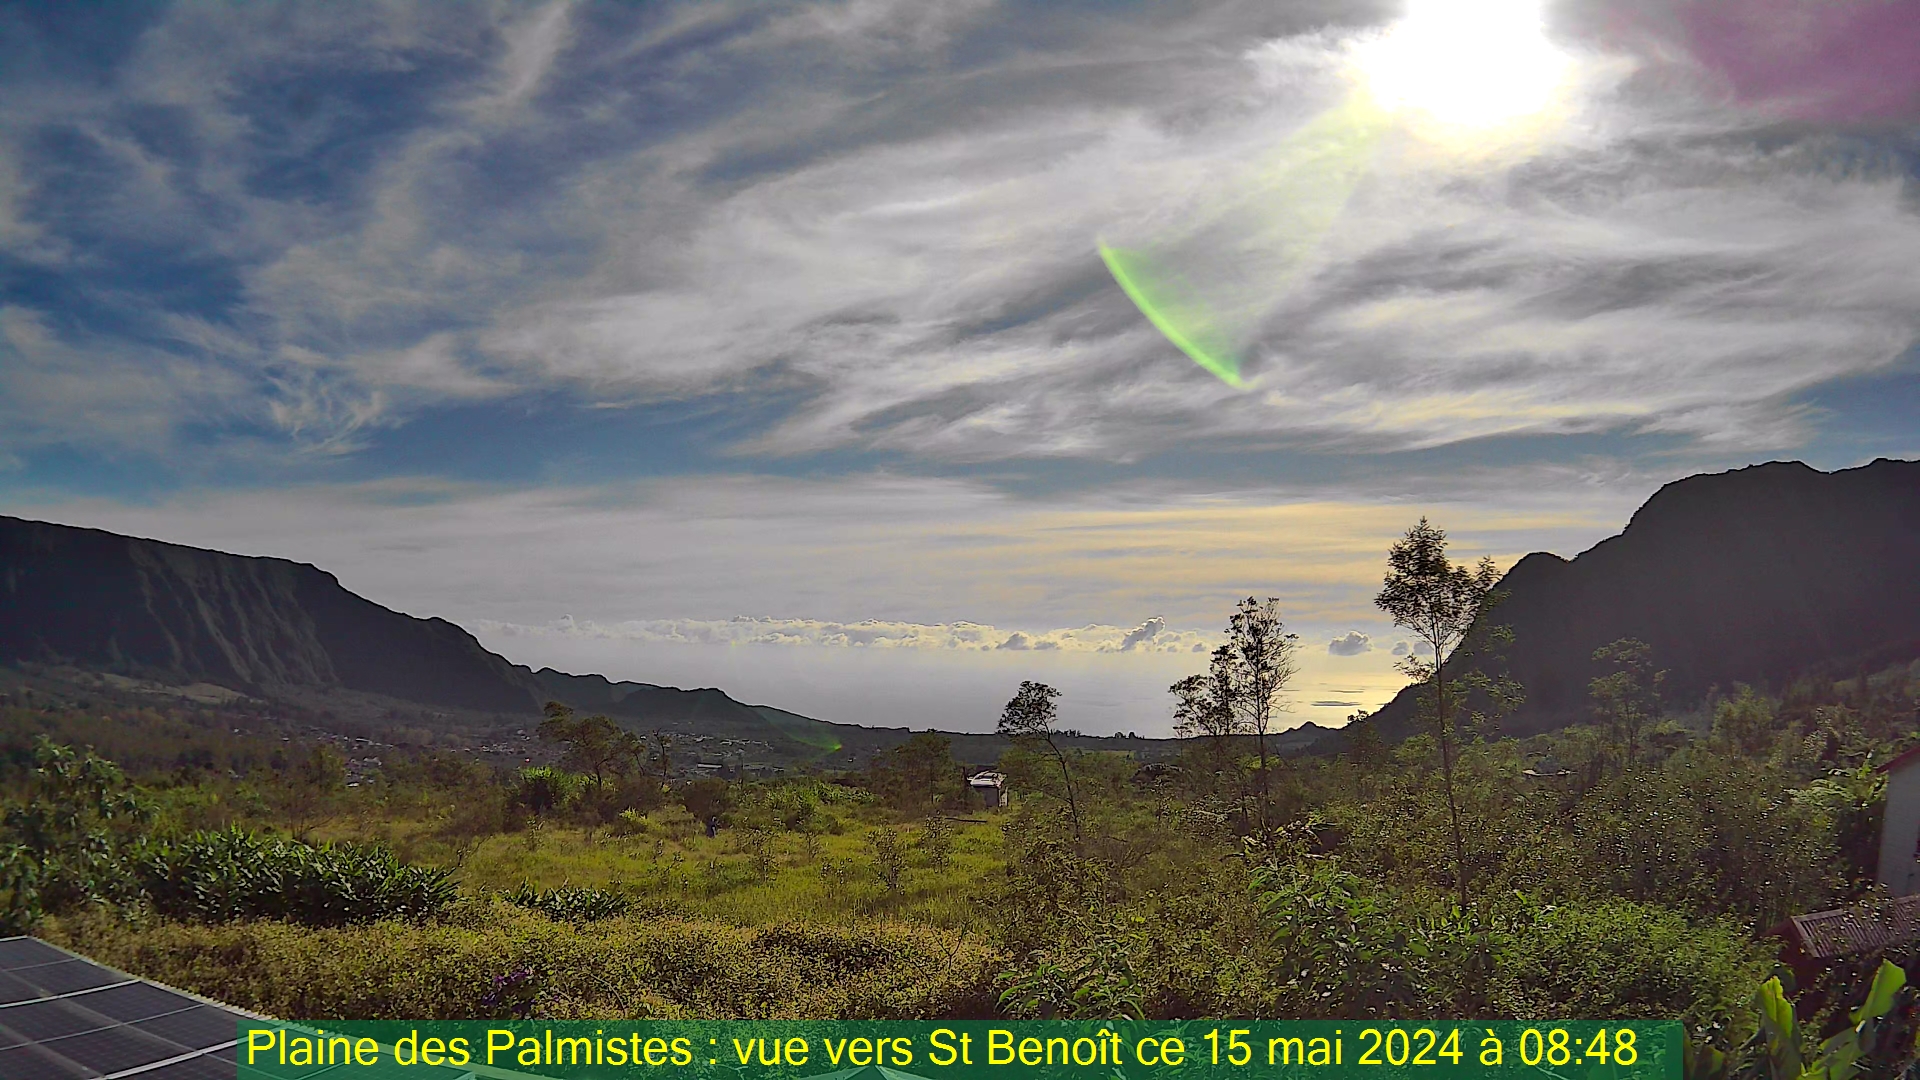 Saint-Denis (Réunion) Mon. 08:50